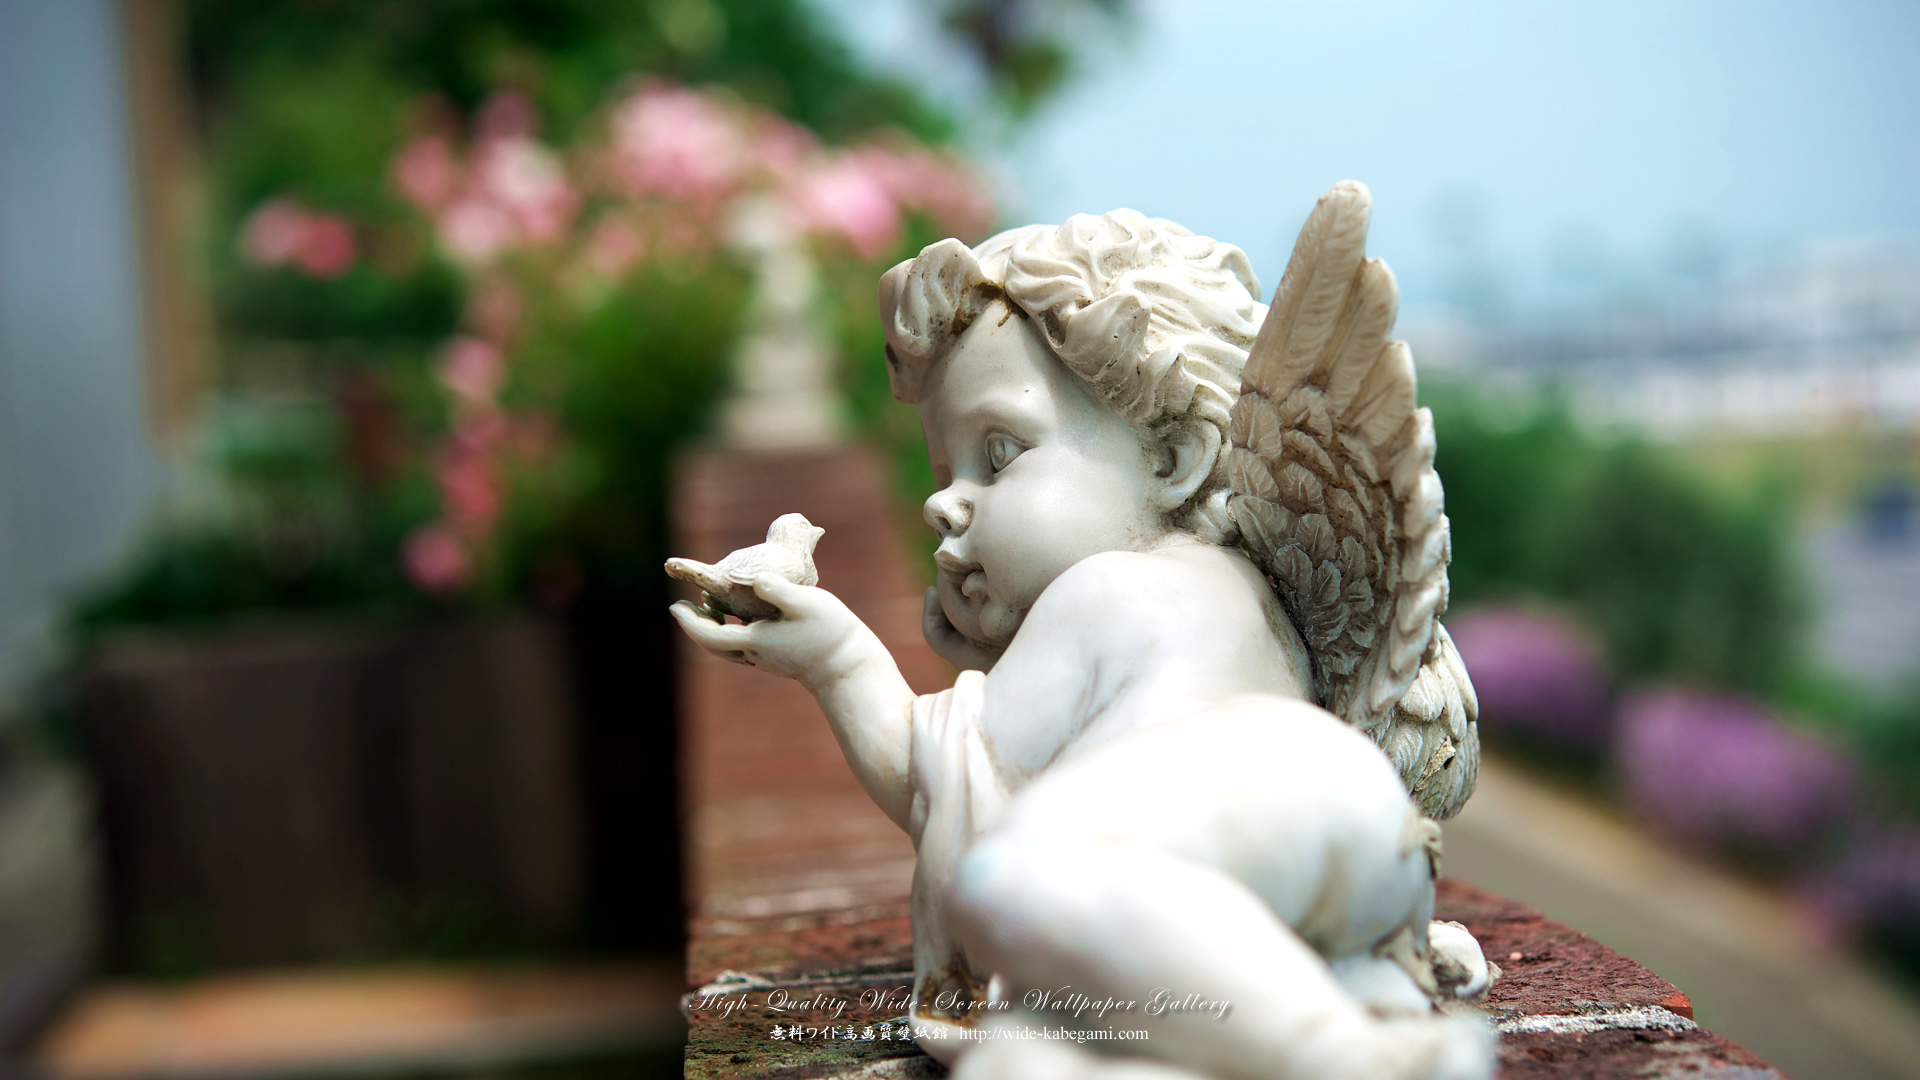 ワイド壁紙(16:9-1920x1080)－バラ園の天使像